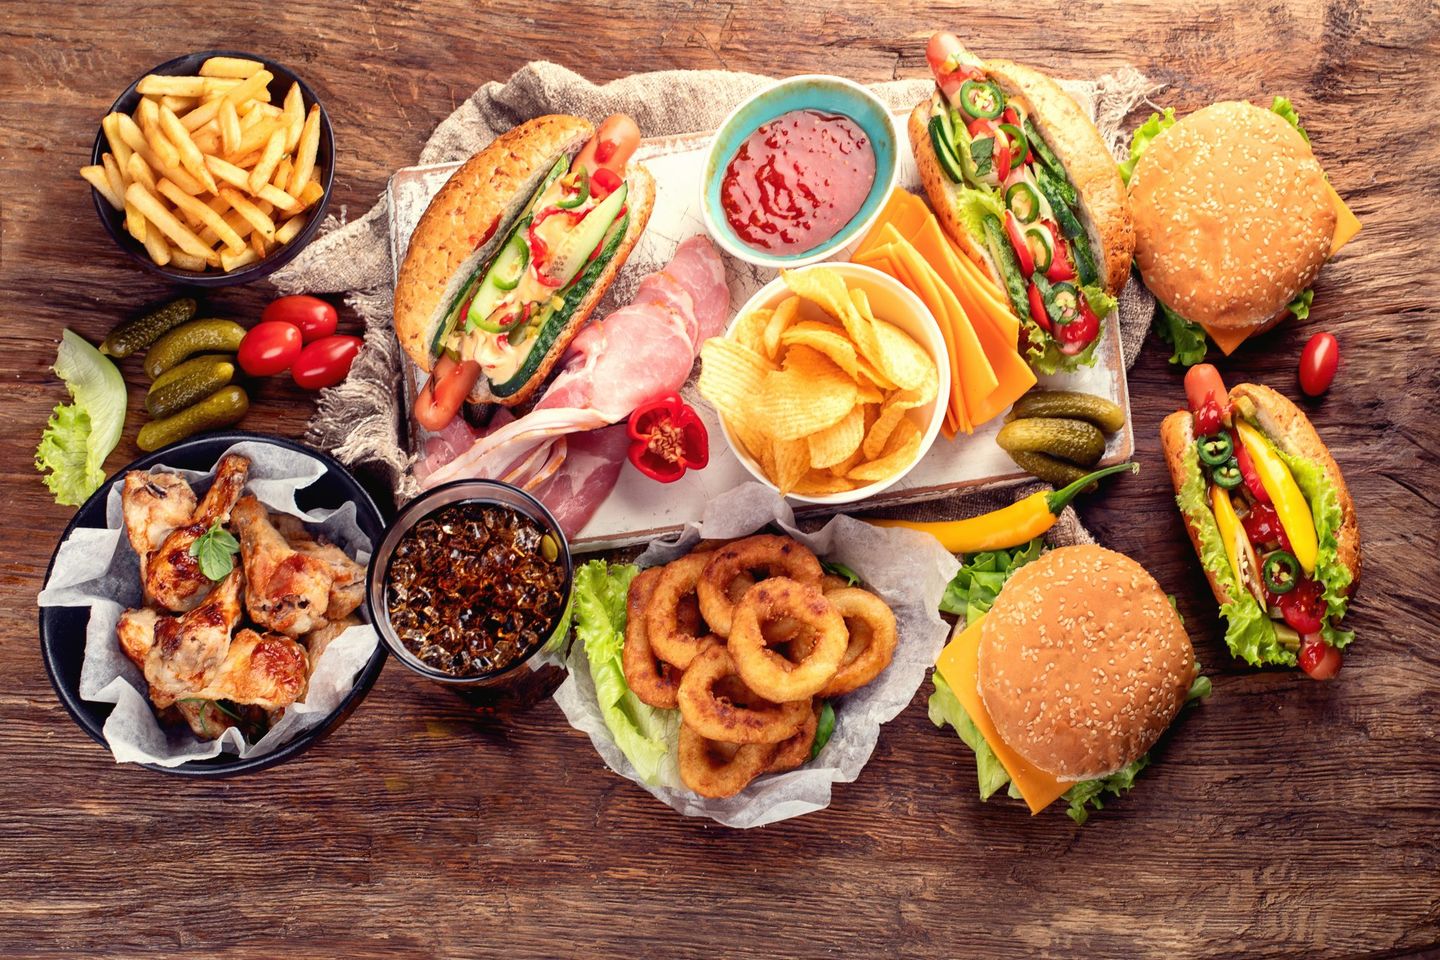 一桌子的典型美国美食,几乎全都是高脂肪高热量的食物